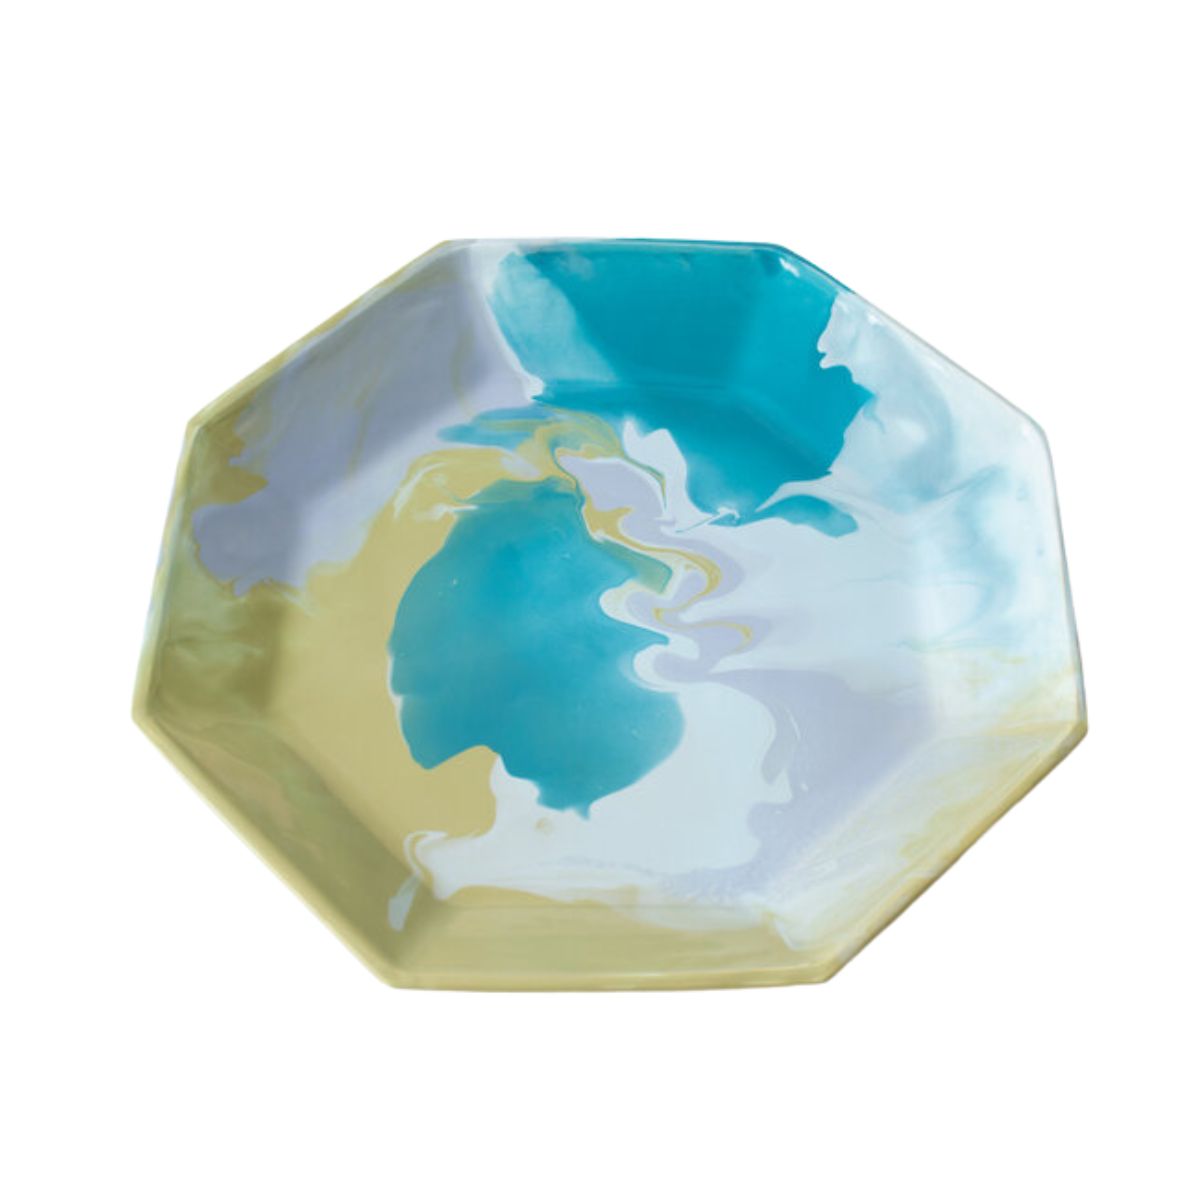 Octagonal Ceramic Tray by Paul Schenider, Green/Blue Geode